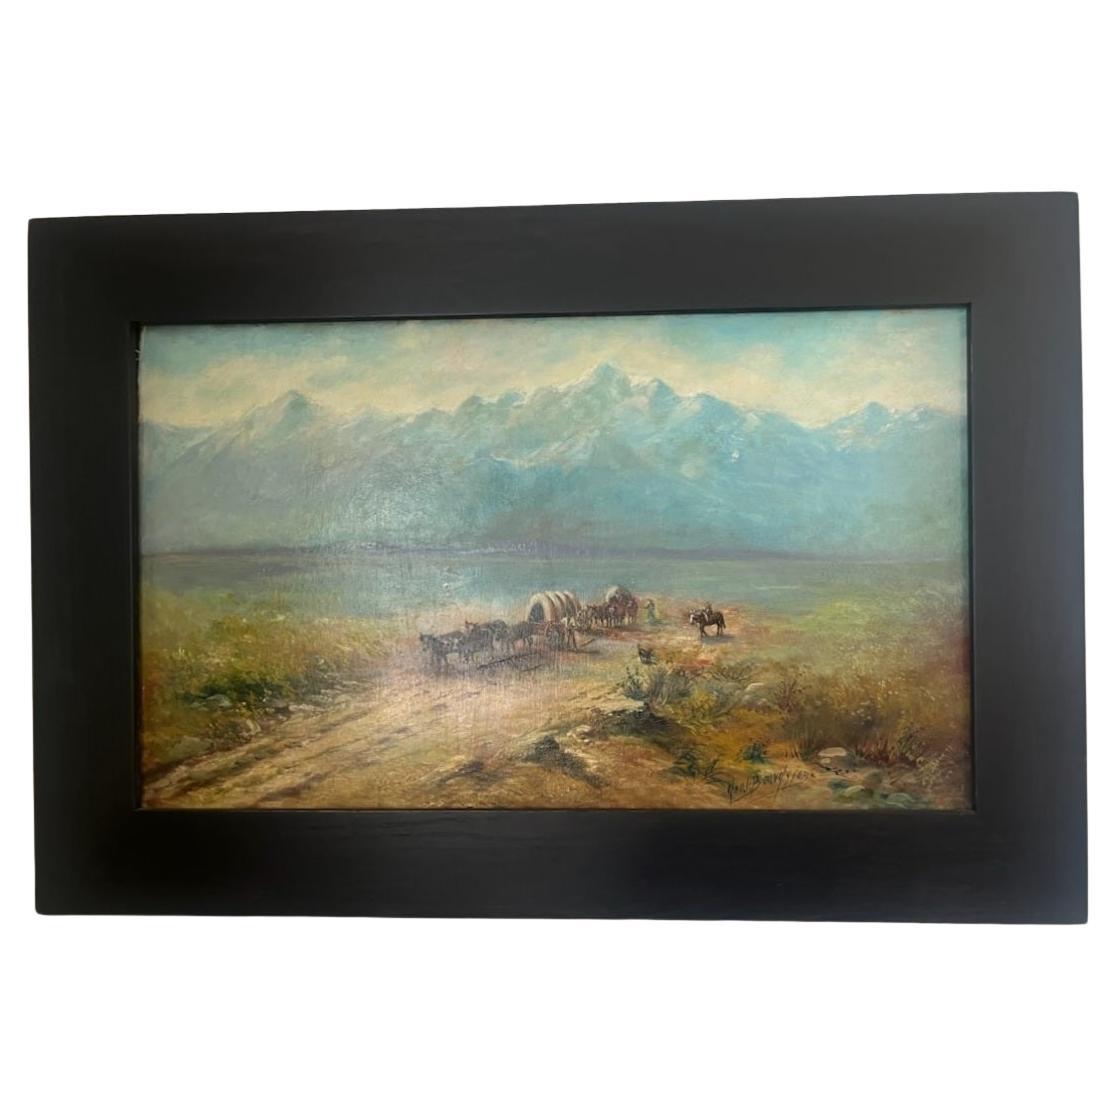 Peinture à l'huile sur carton du 19e siècle représentant des wagons sur la piste poussiéreuse